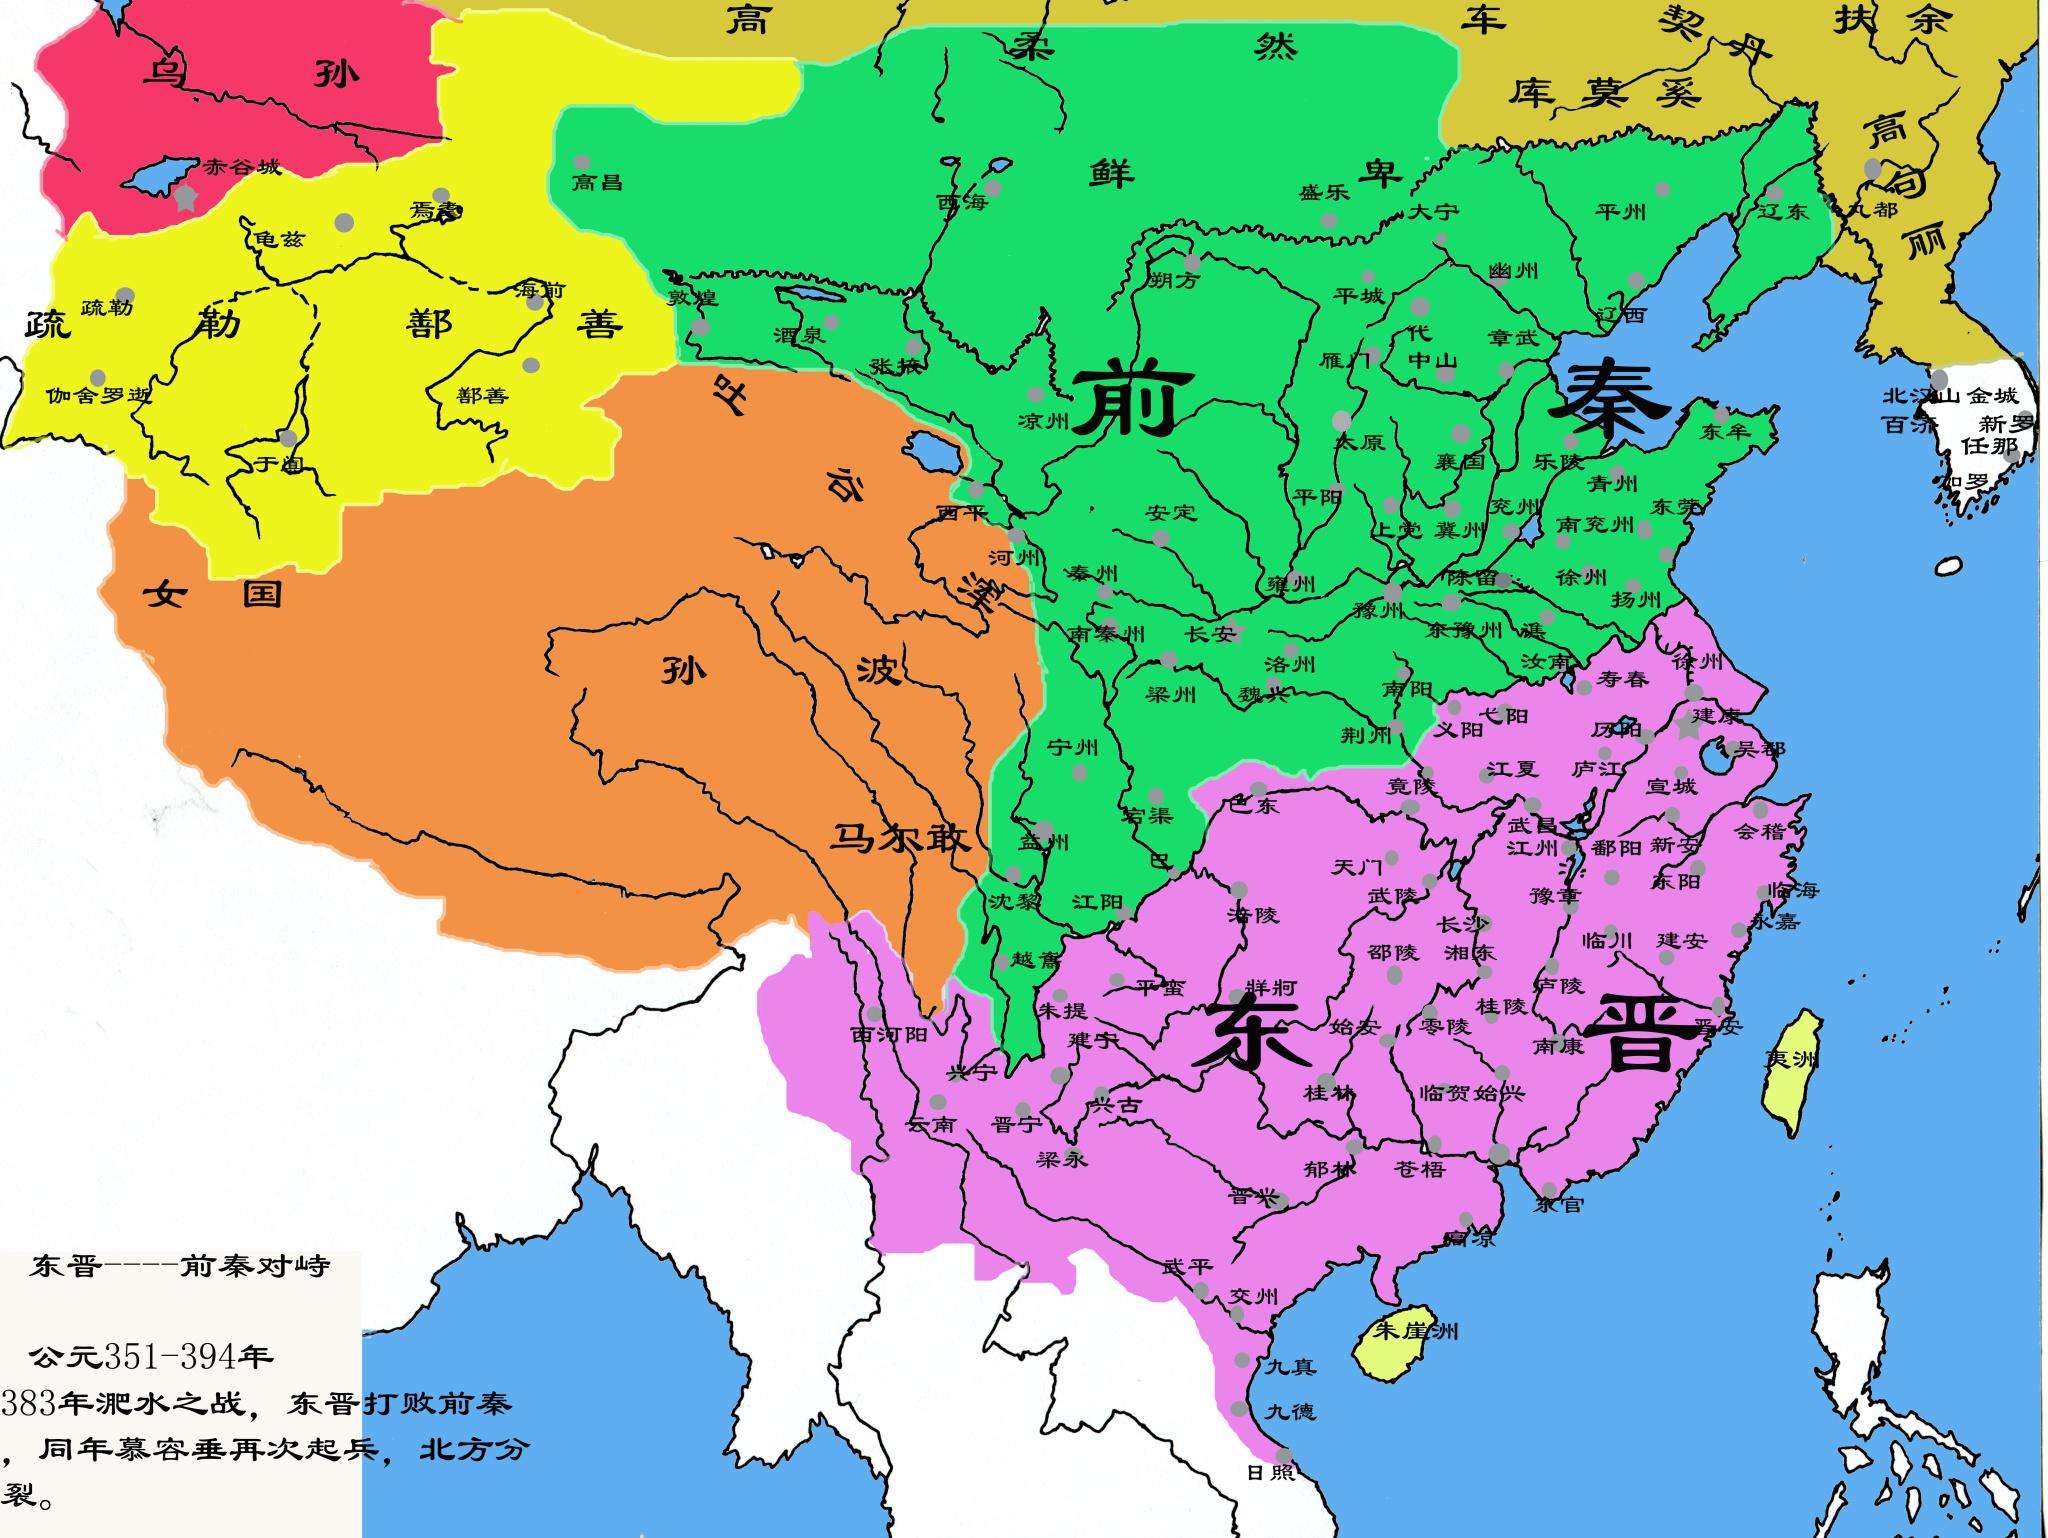 西晋地图（西晋二十一州地图） - 生活指南百科全书